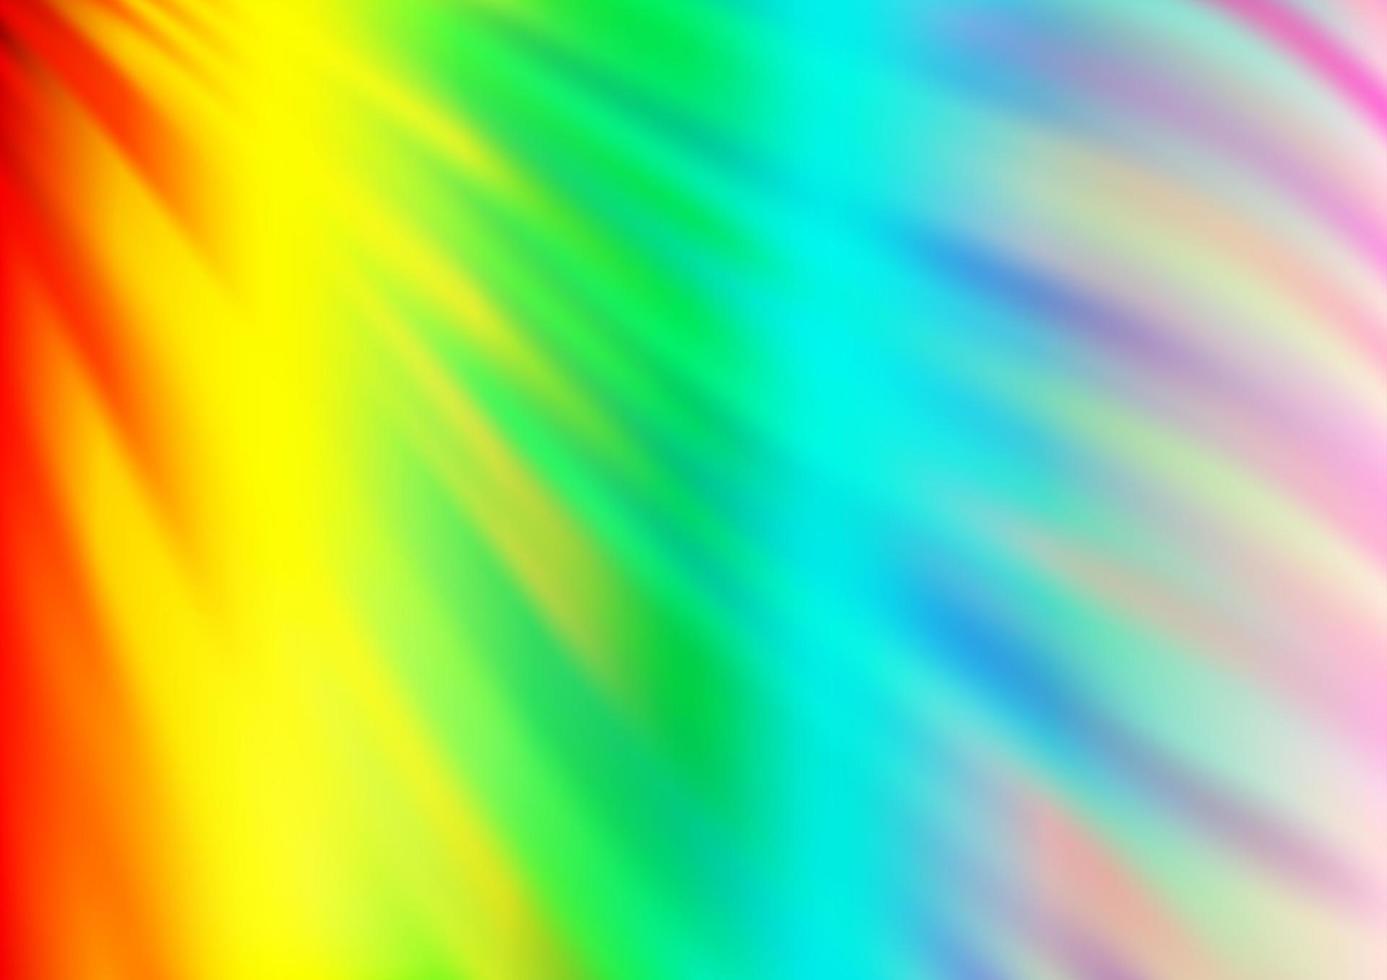 luz multicolor, fundo do vetor do arco-íris com fitas dobradas.